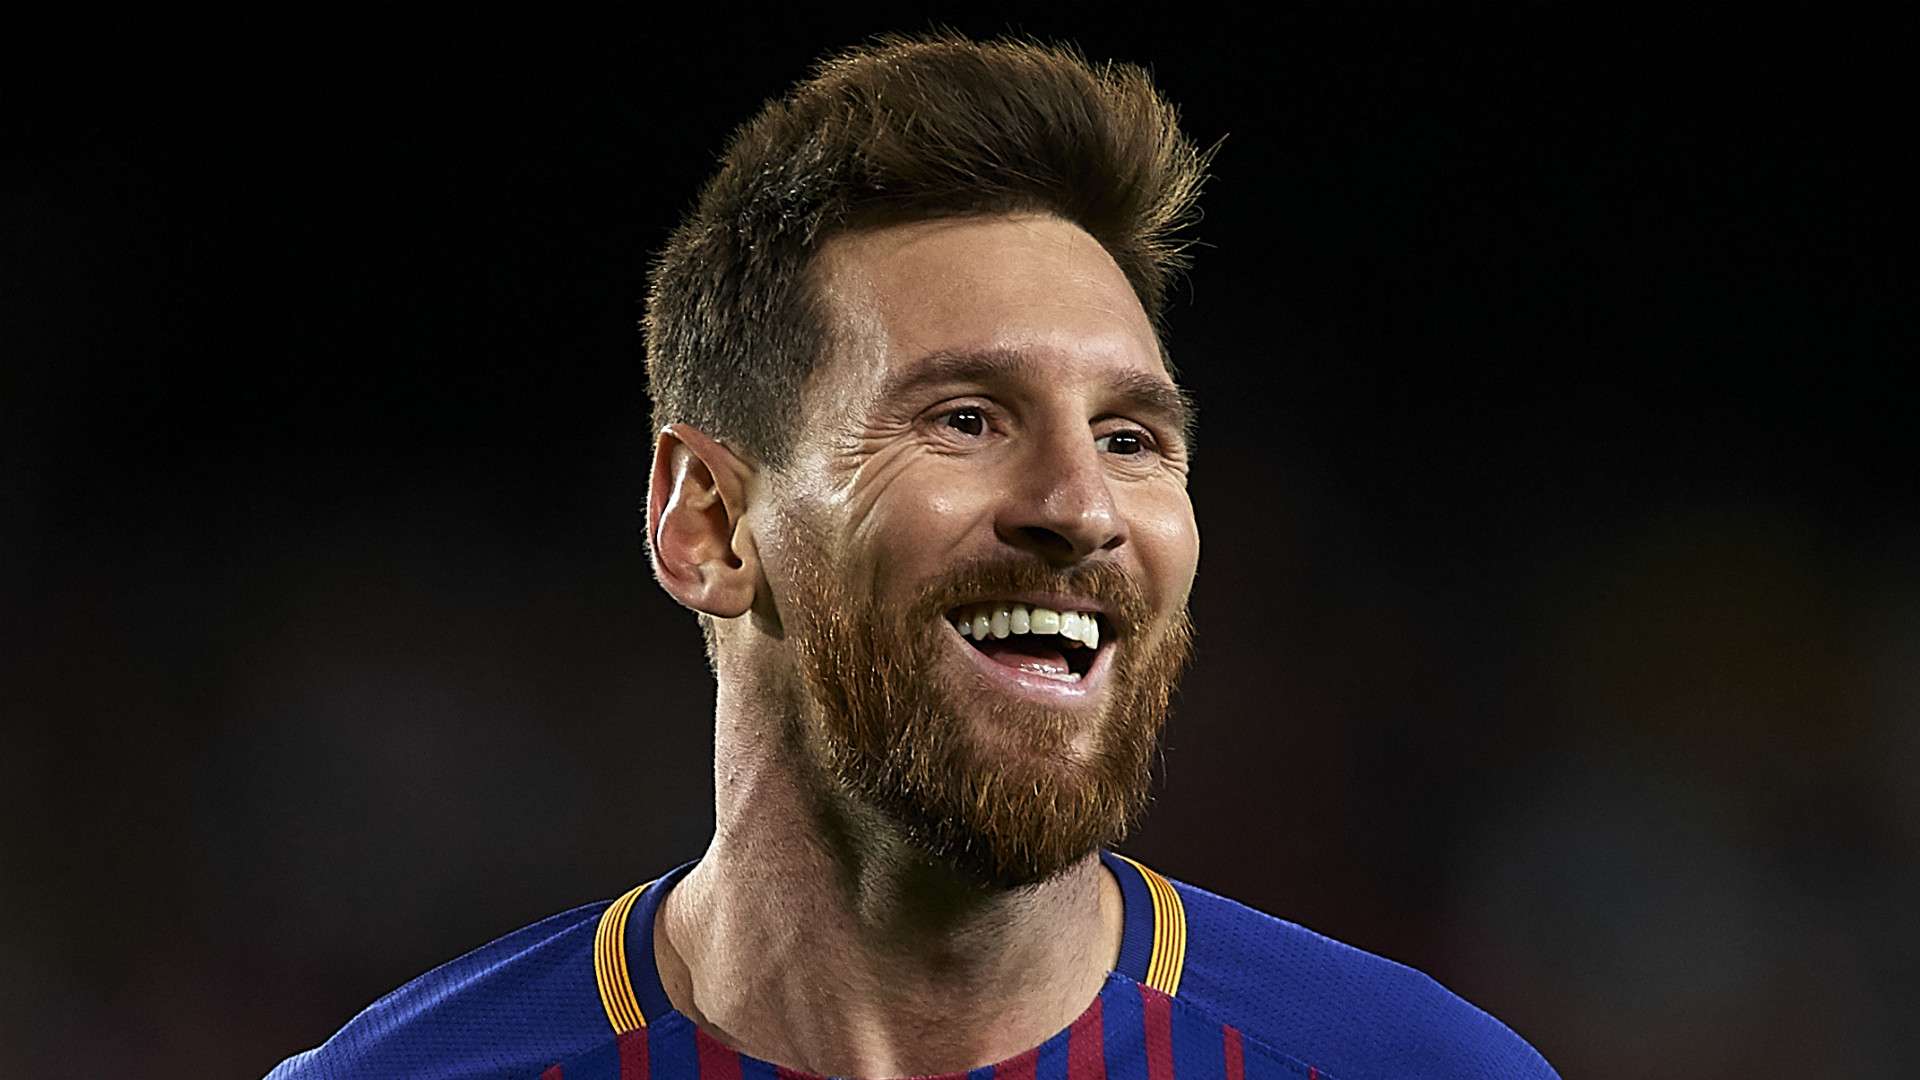 HD Lionel Messi Barcelona